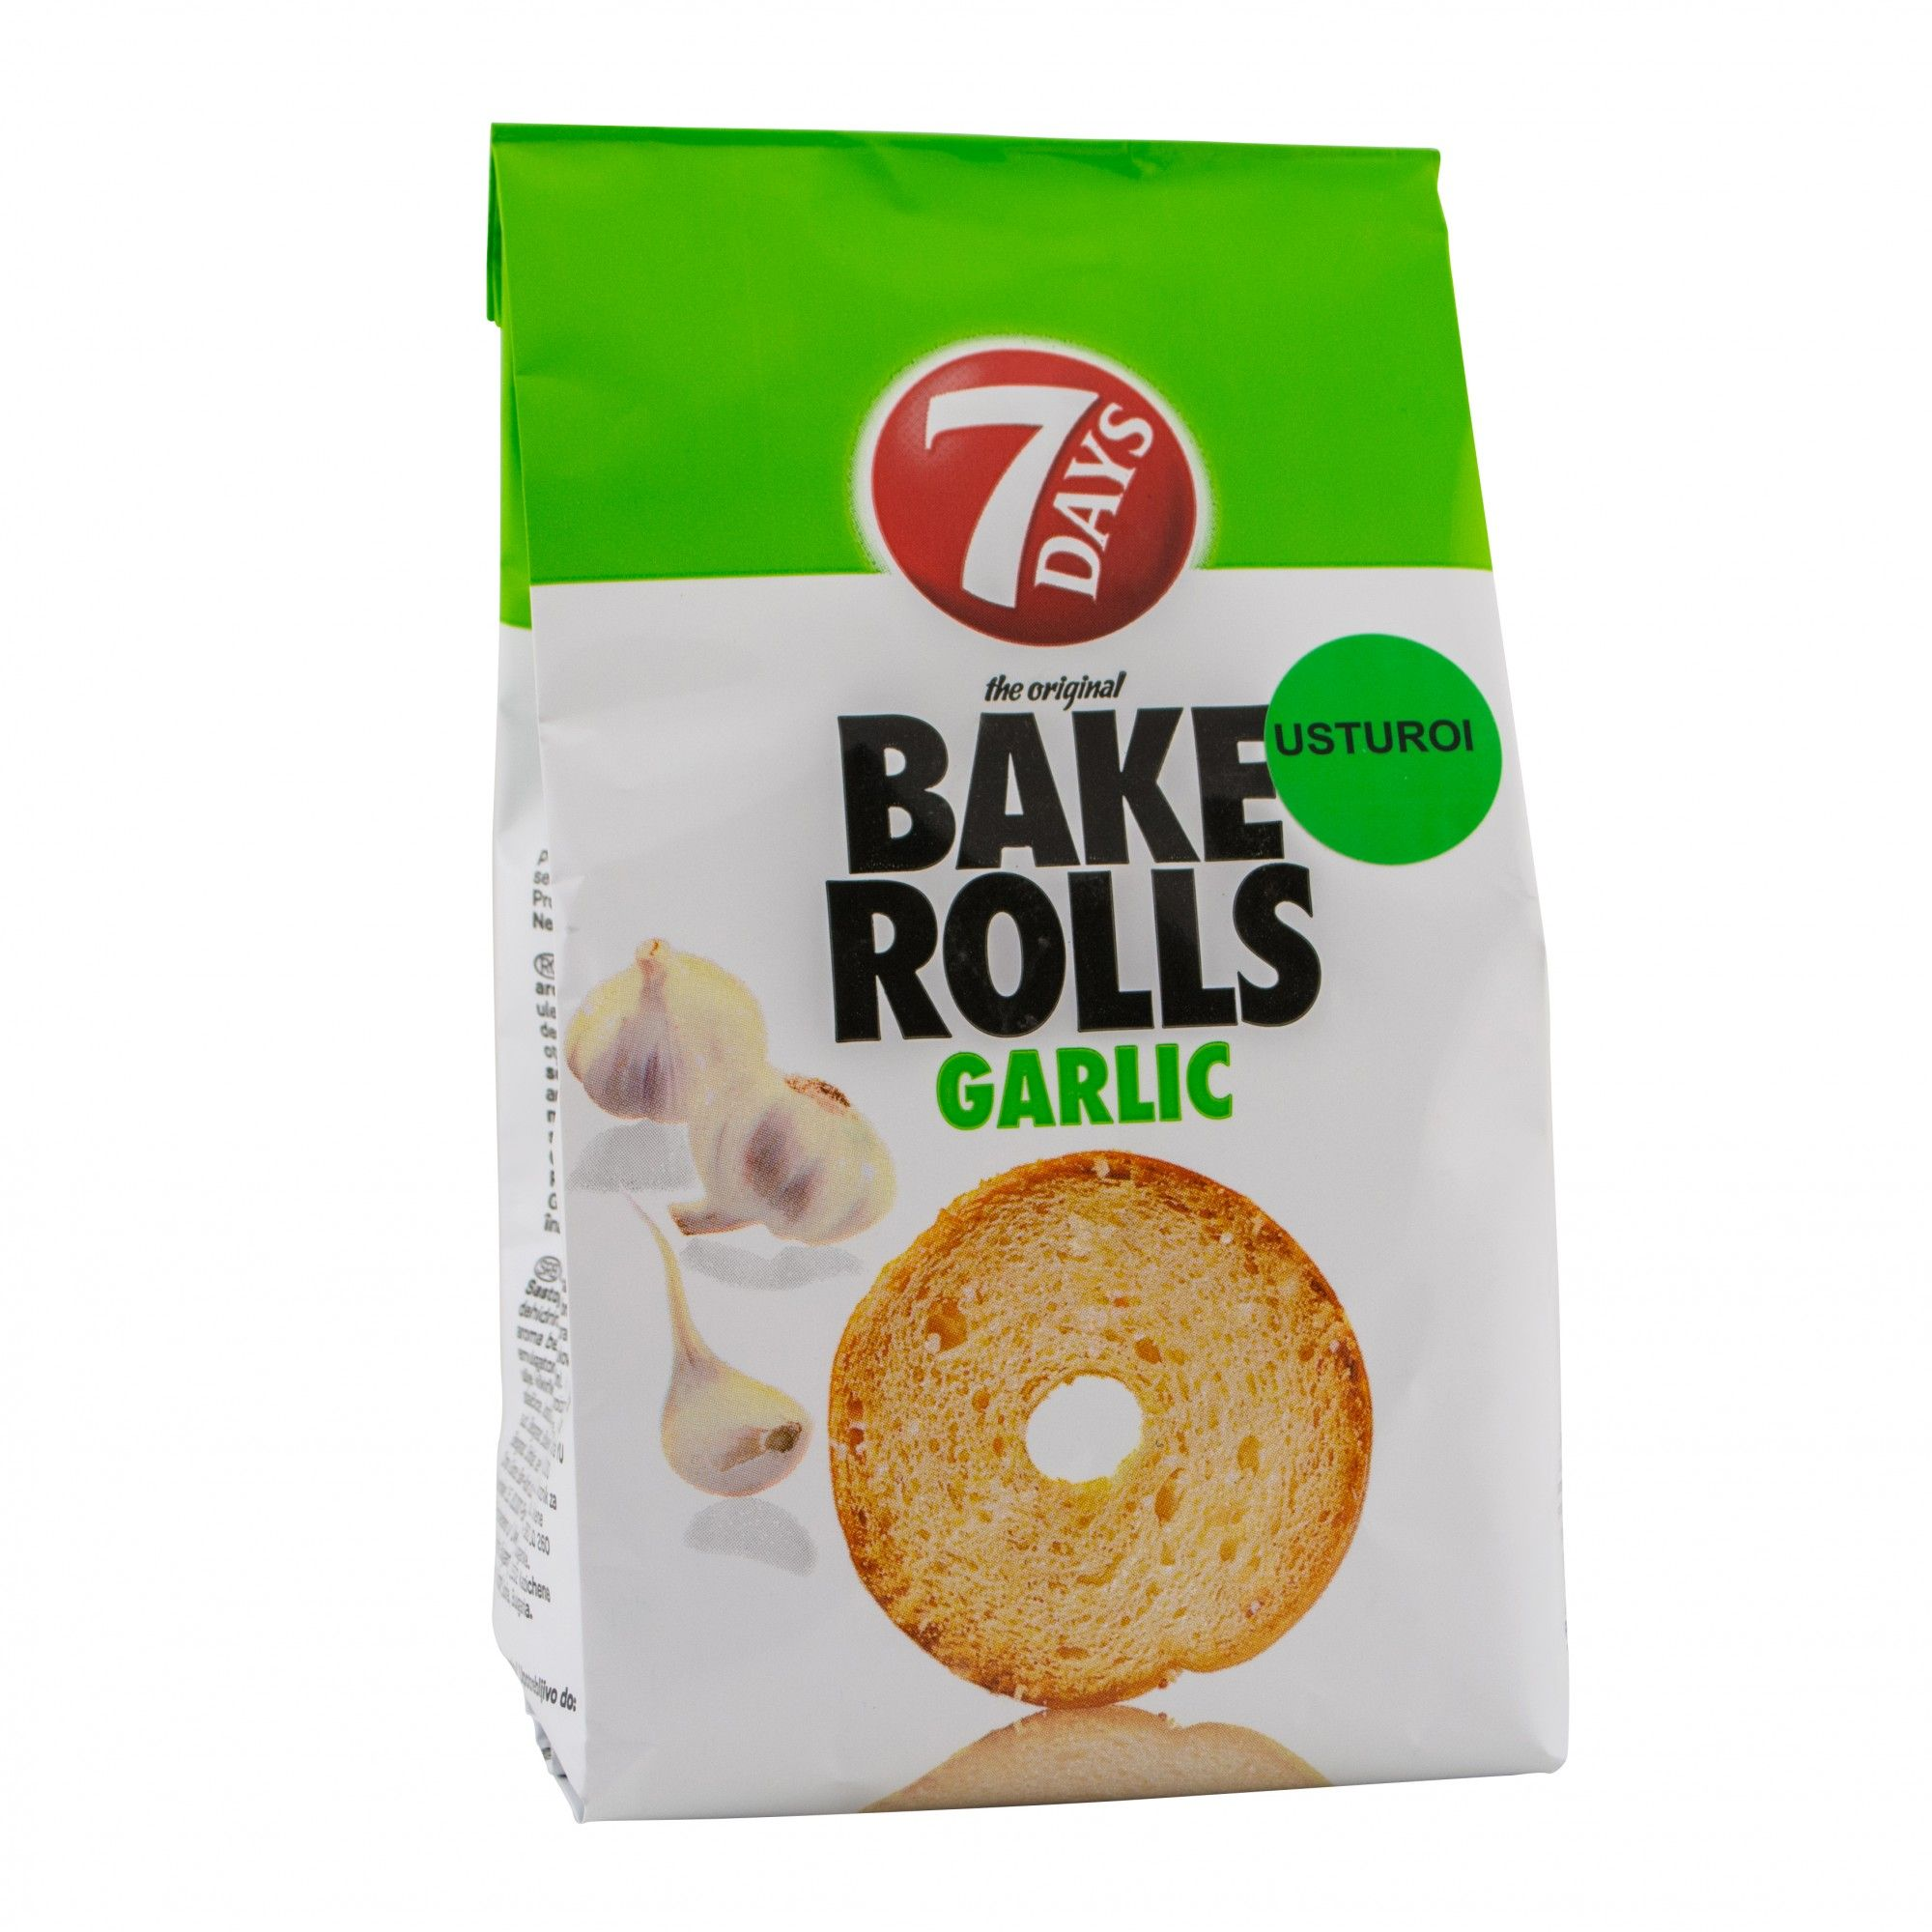 Bake rolls cu usturoi 7 Days